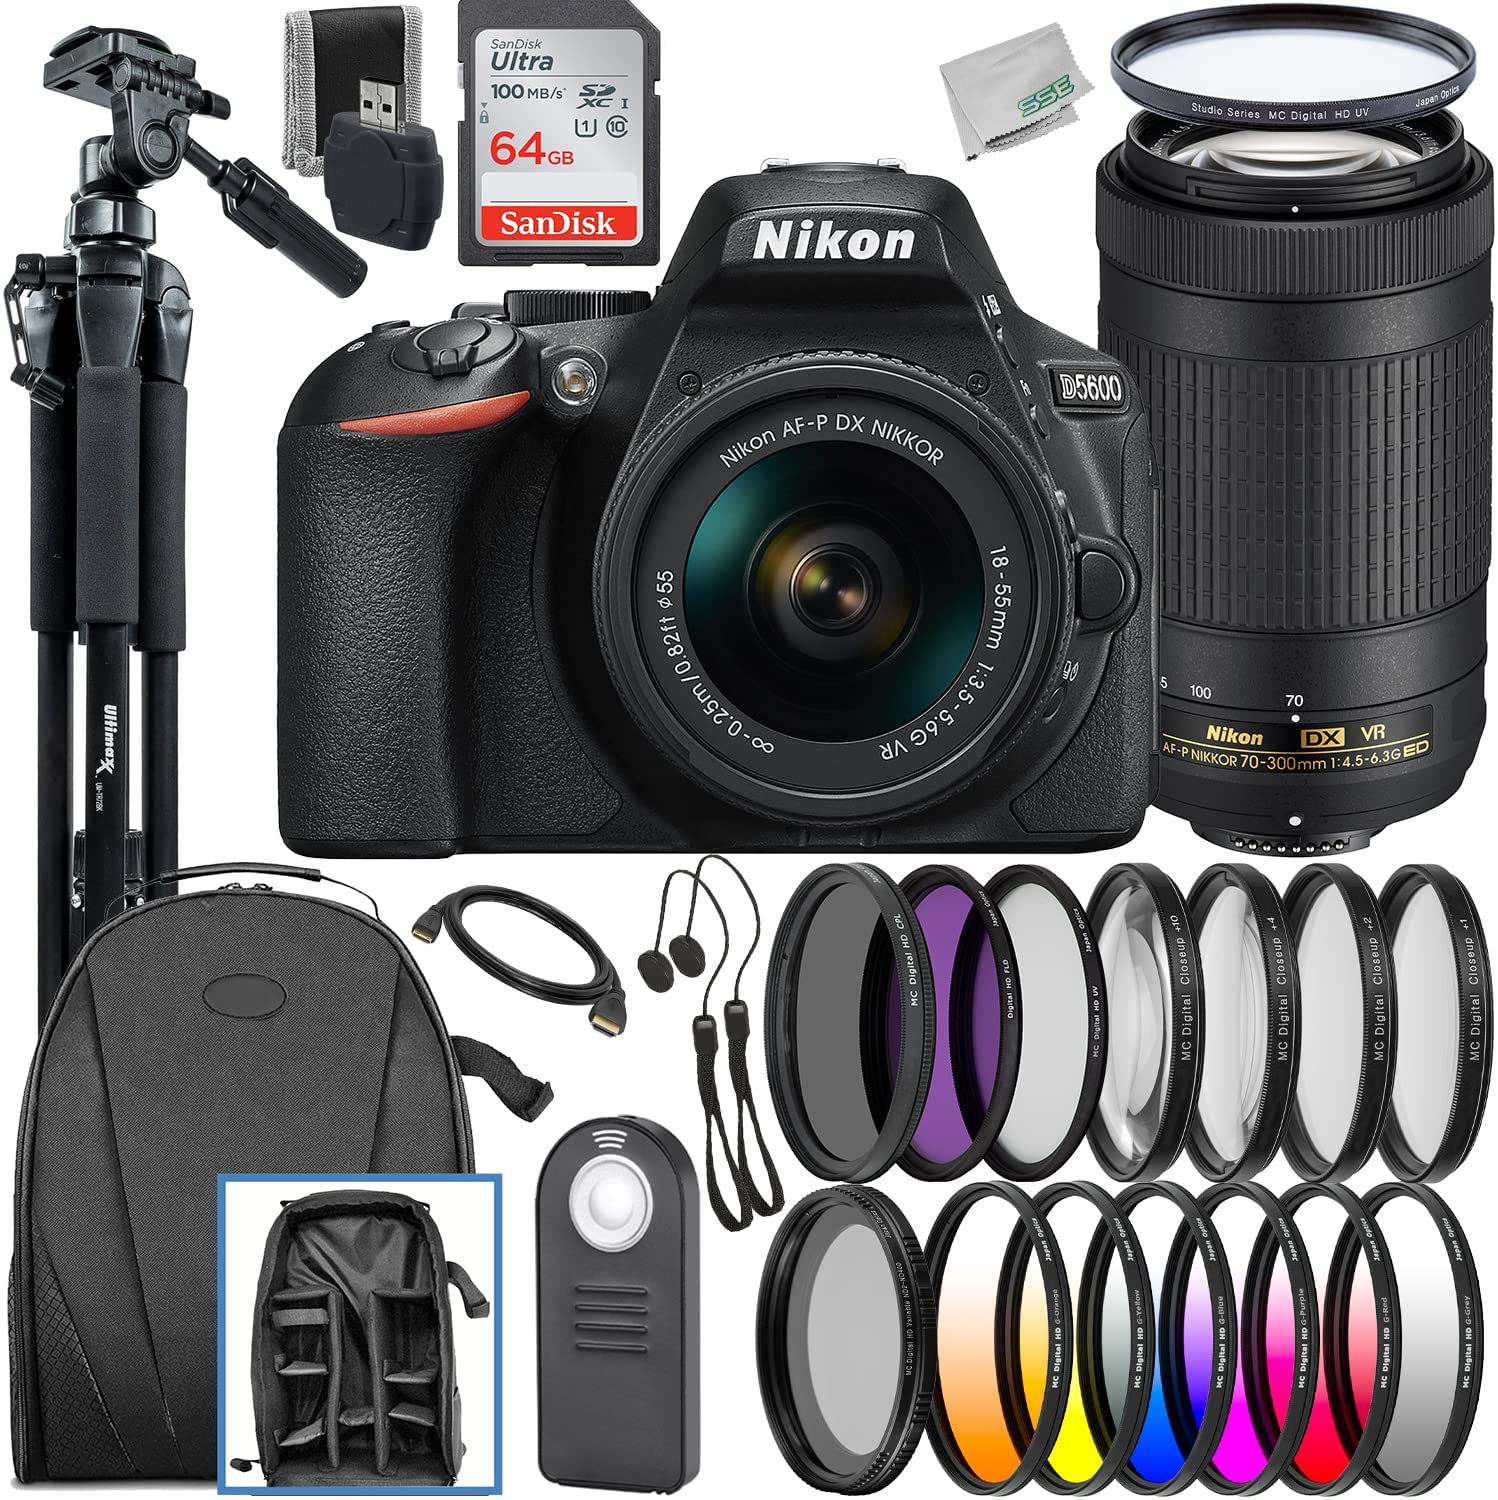 Nikon D5600 DSLR Camera with AF-P DX NIKKOR 18-55mm f/3.5-5.6G VR & AF-P DX NIKKOR 70-300mm f/4.5-6.3G ED VR Lenses & Deluxe Accessory Bundle: SanDisk Ultra 64GB SDXC, Lightweight Tripod & Much More